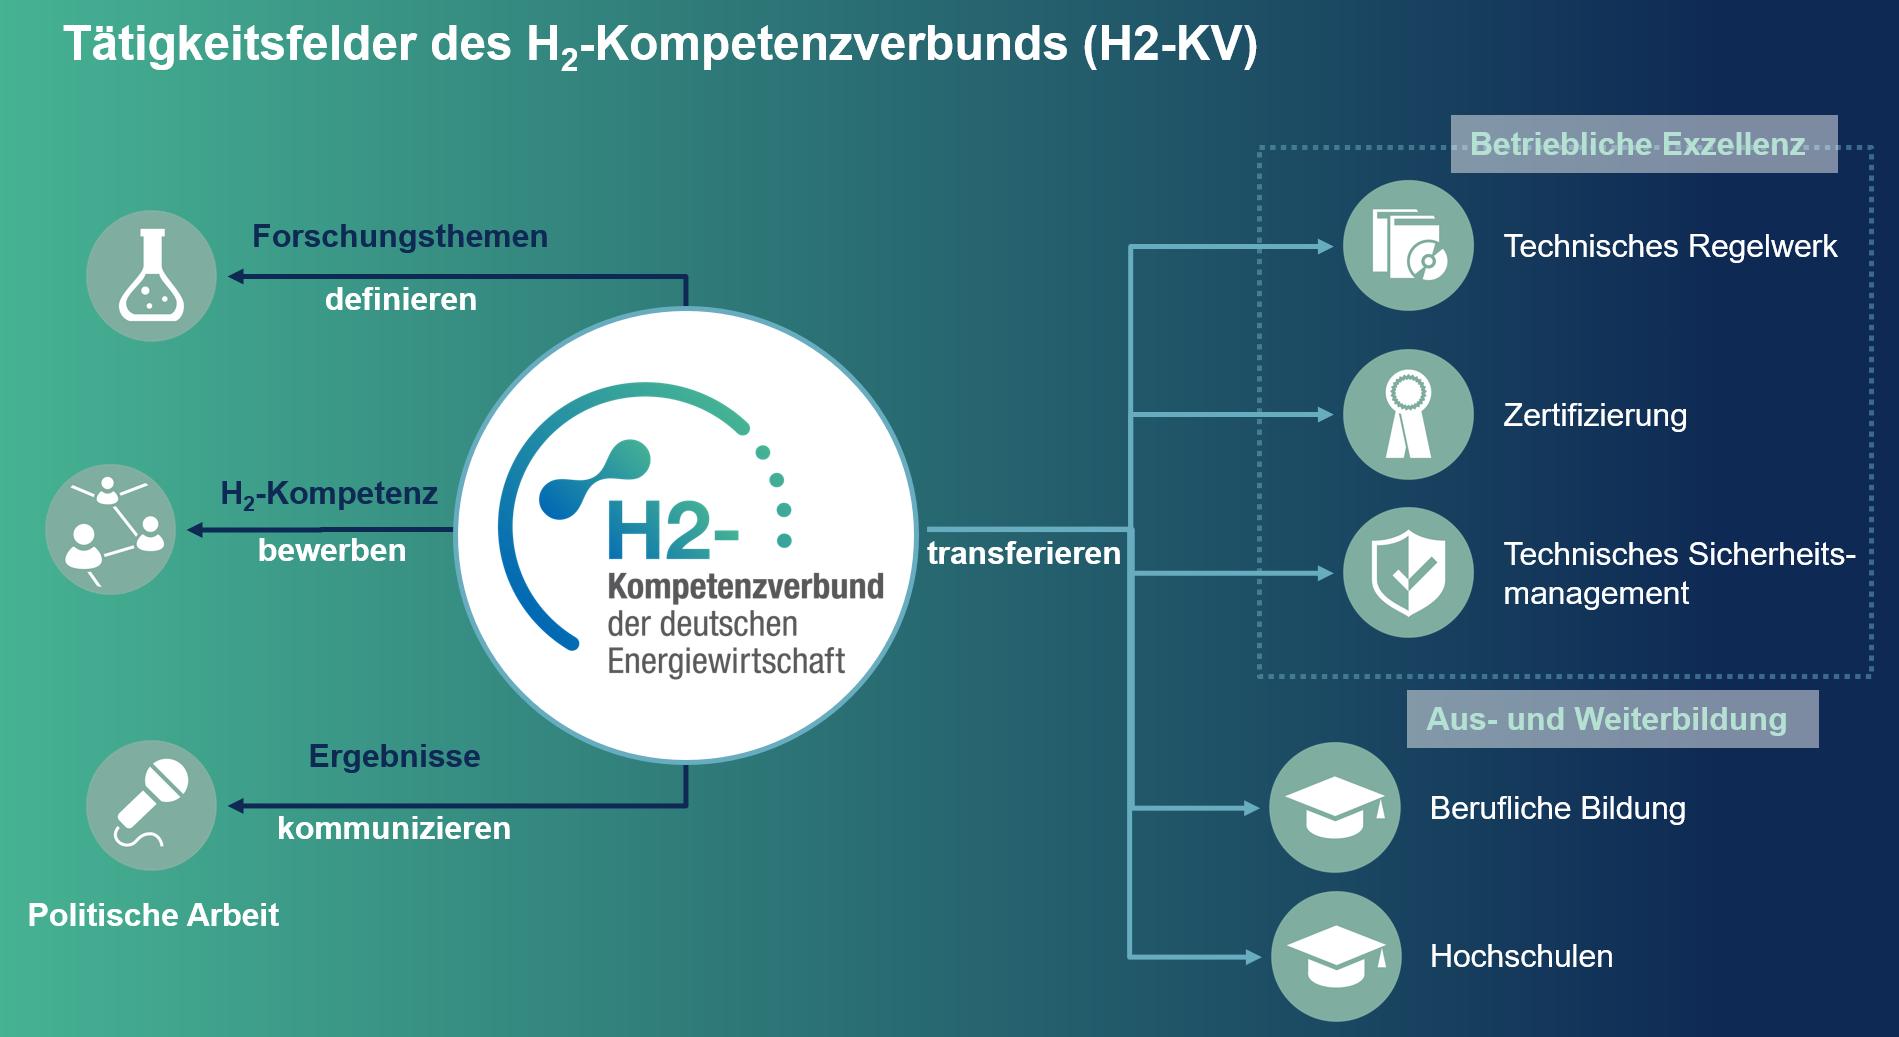 Der H2-Kompetenzverbund definiert Forschungsthemen zu Wasserstoff, bewirbt H2-Kompetenz und kommuniziert die Ergebnisse von Studien und Forschungsprojekten der gemeinsamen Arbeit. Zudem werden die Ergebnisse der Arbeit zur AUs- und Weiterbildung sowie für die Zertifizierung und technische Weiterentwicklung genutzt.